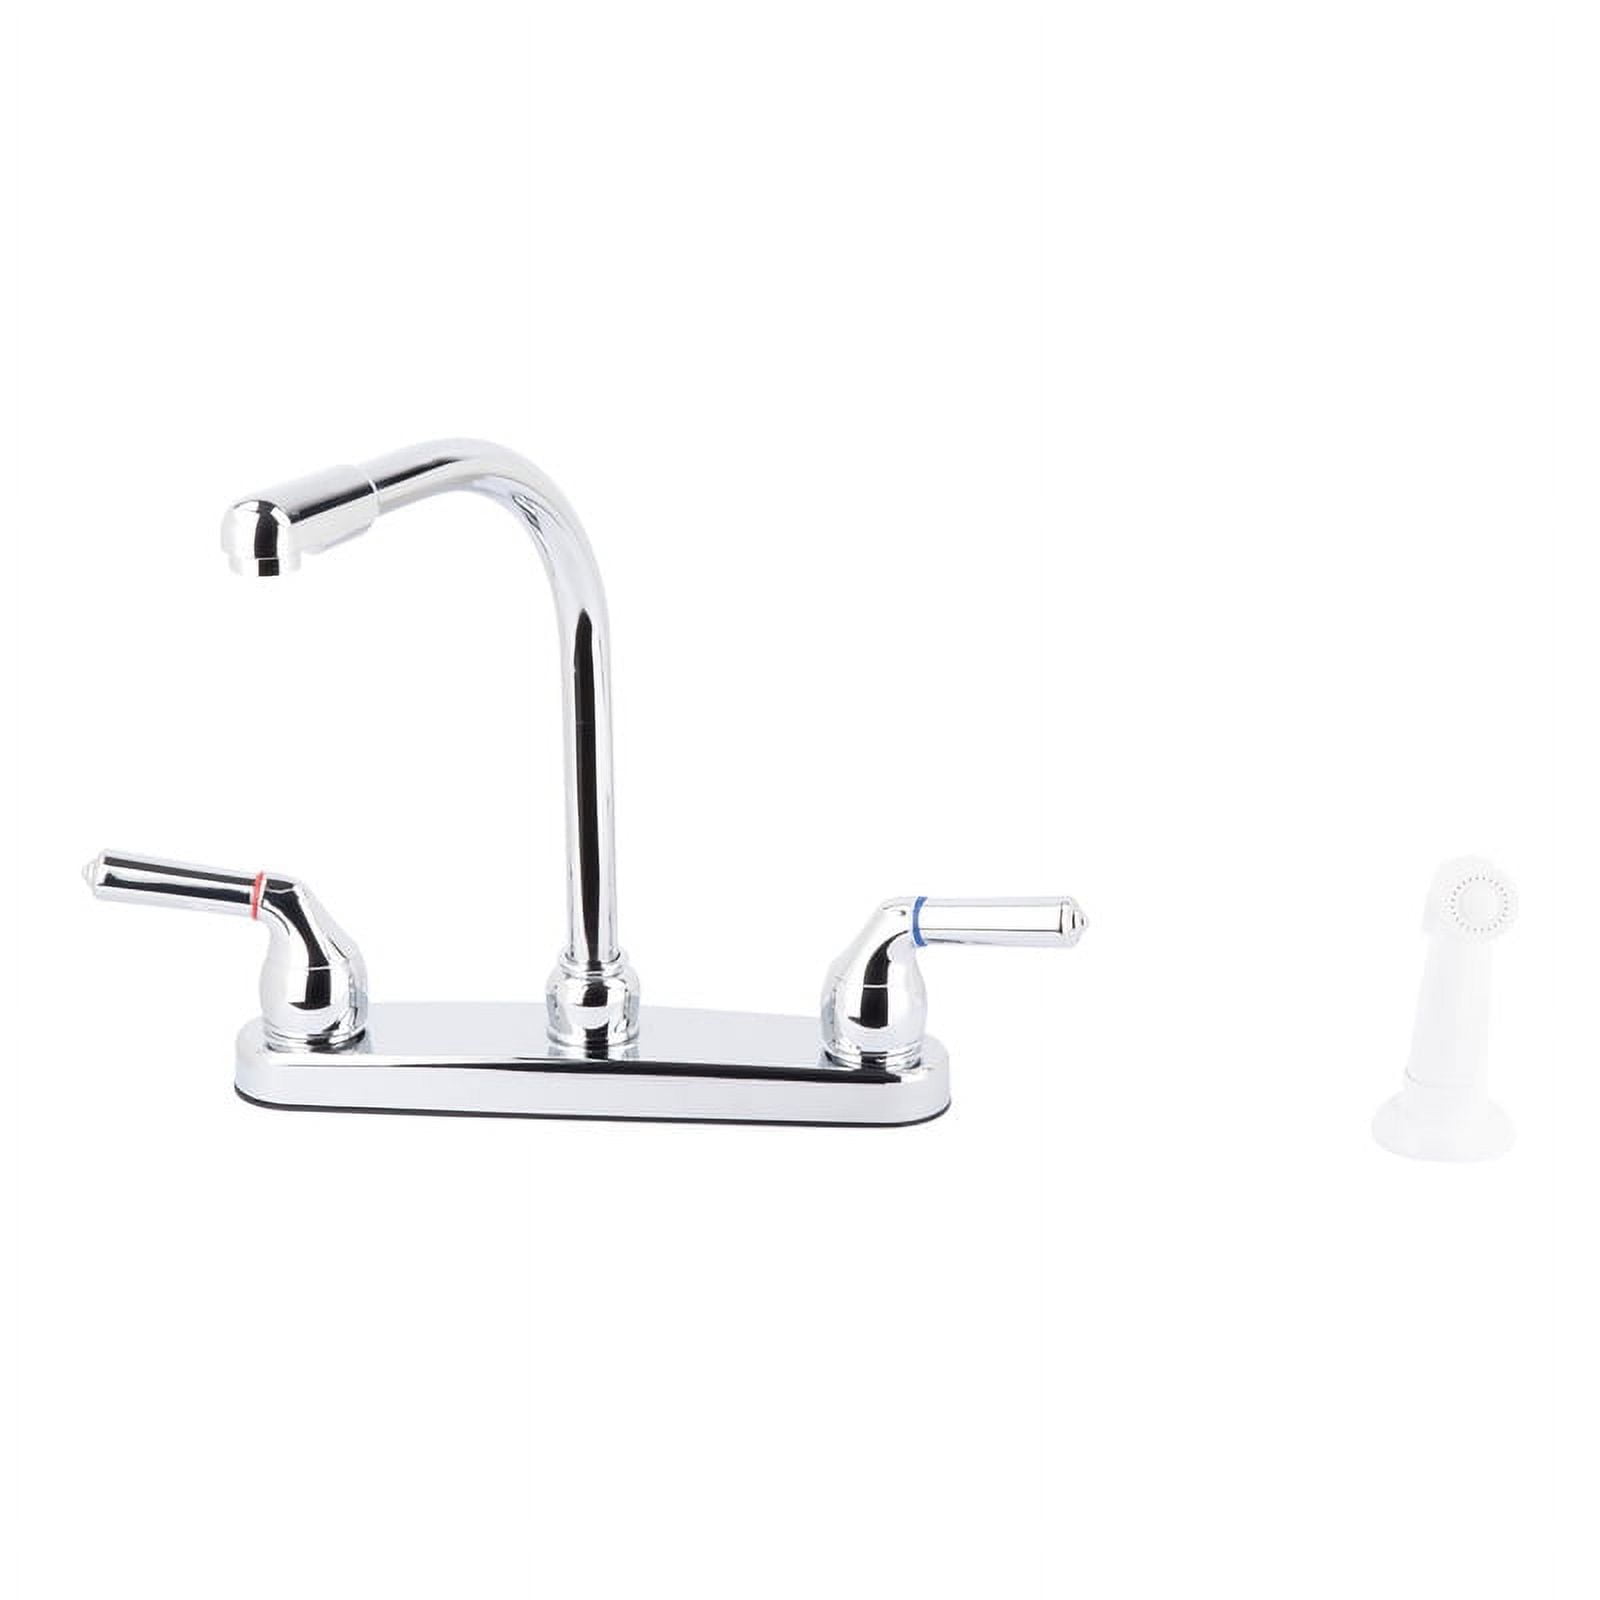 012 33425cp 2-handle Hi-rise Spout Kitchen Faucet With Spray, Chrome